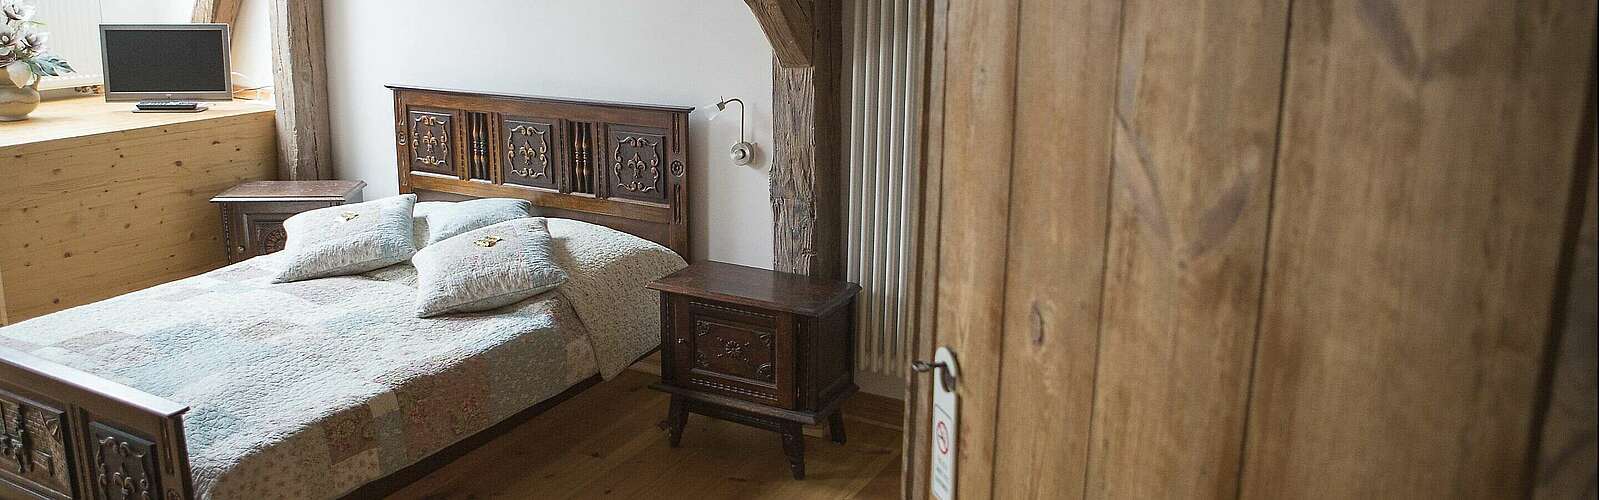 Blick ins historische Schlafzimmer mit bretonischem Bett,
        
    

        Foto: Fotograf / Lizenz - Media Import/Steffen Lehmann